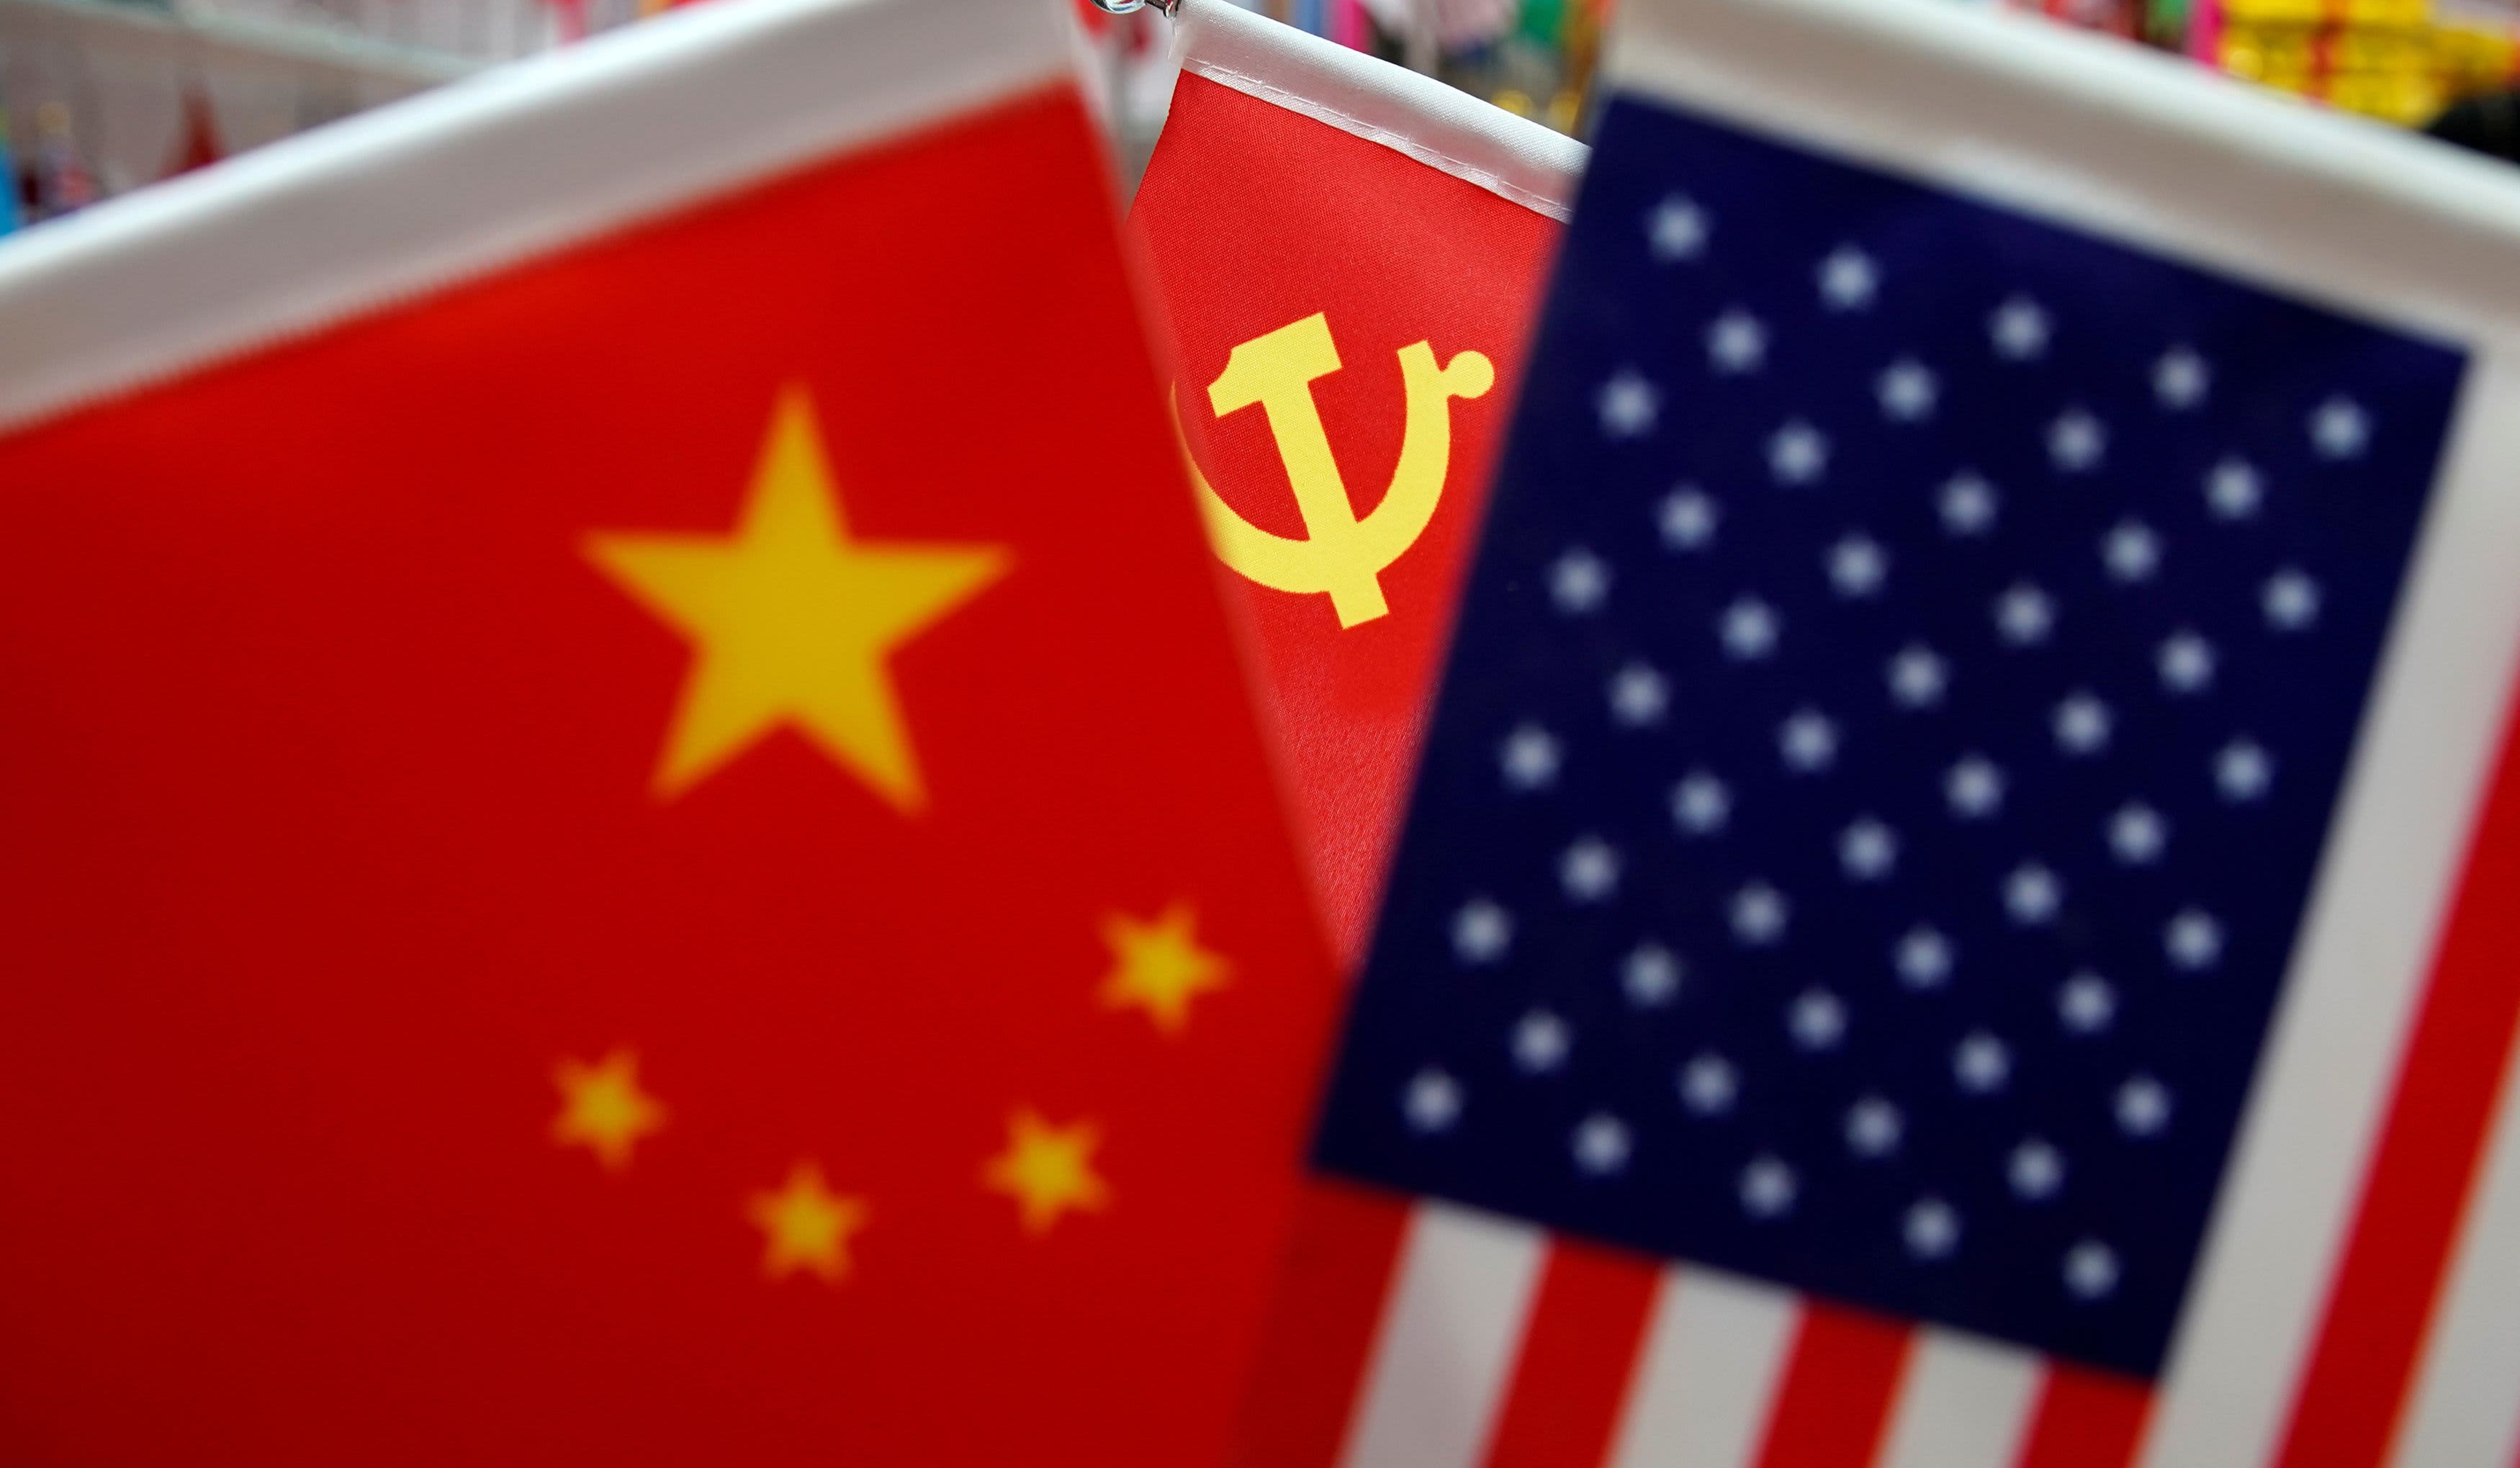 ԱՄՆ-ը և Չինաստանը պայմանավորվել են առևտրային հարաբերությունների շուրջ լրացուցիչ խորհրդակցություններ անցկացնել